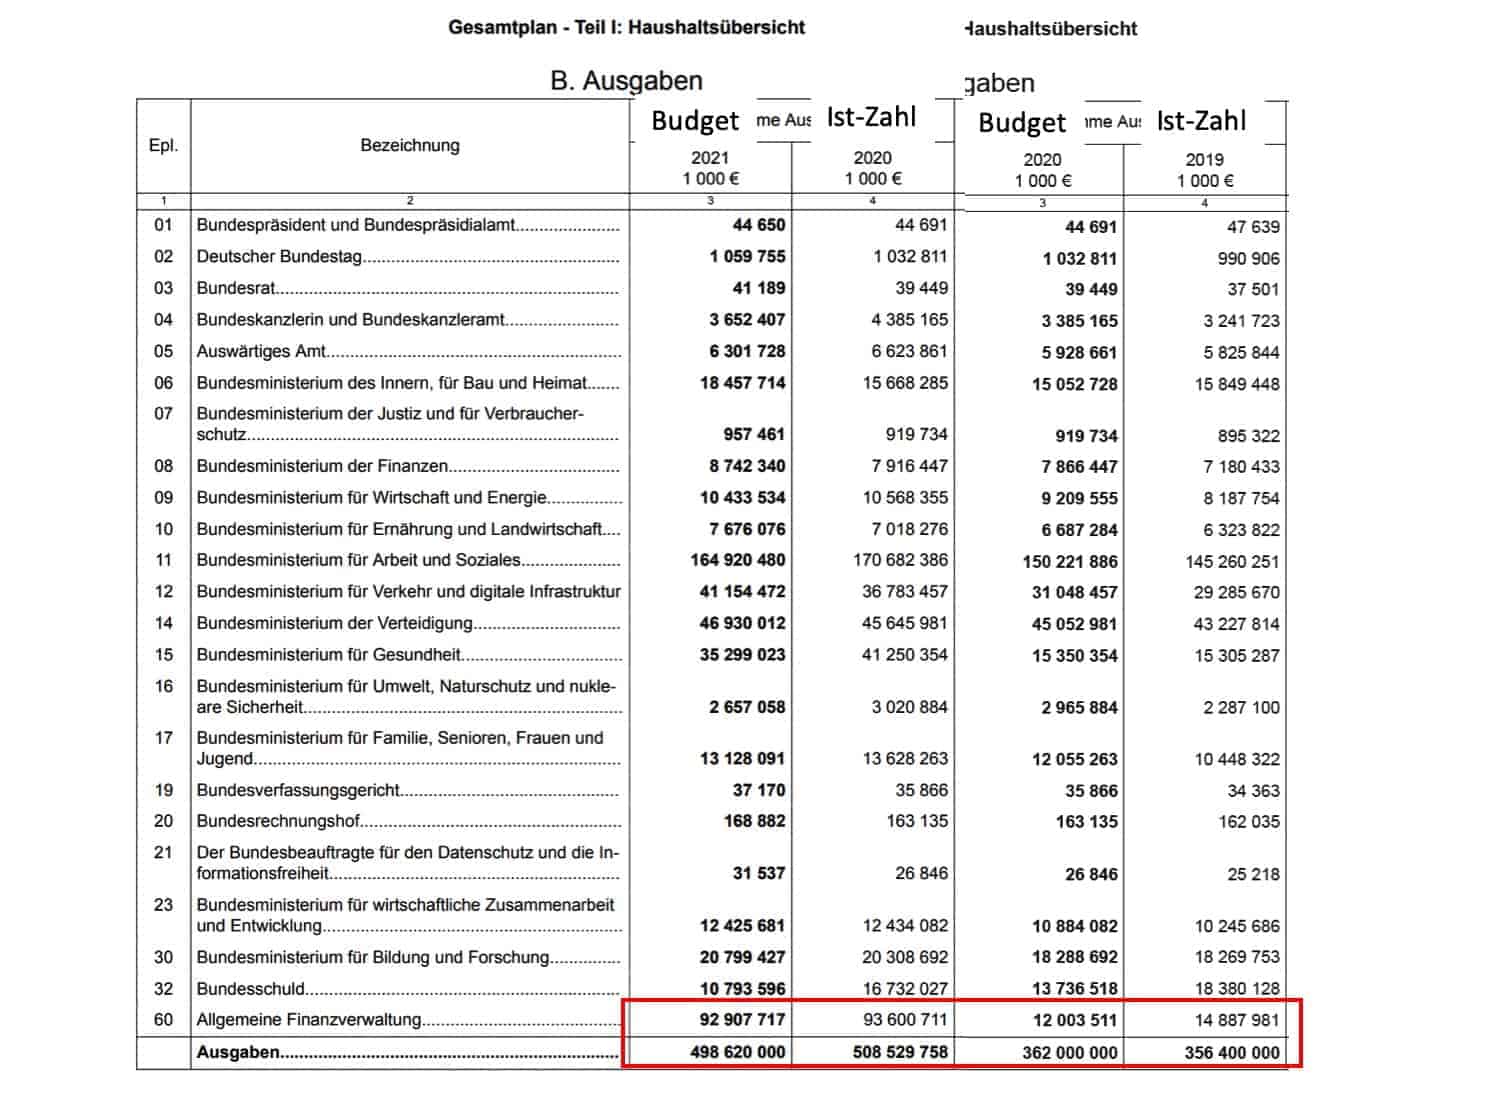 Tabelle Bundeshaushalt 2019-2021